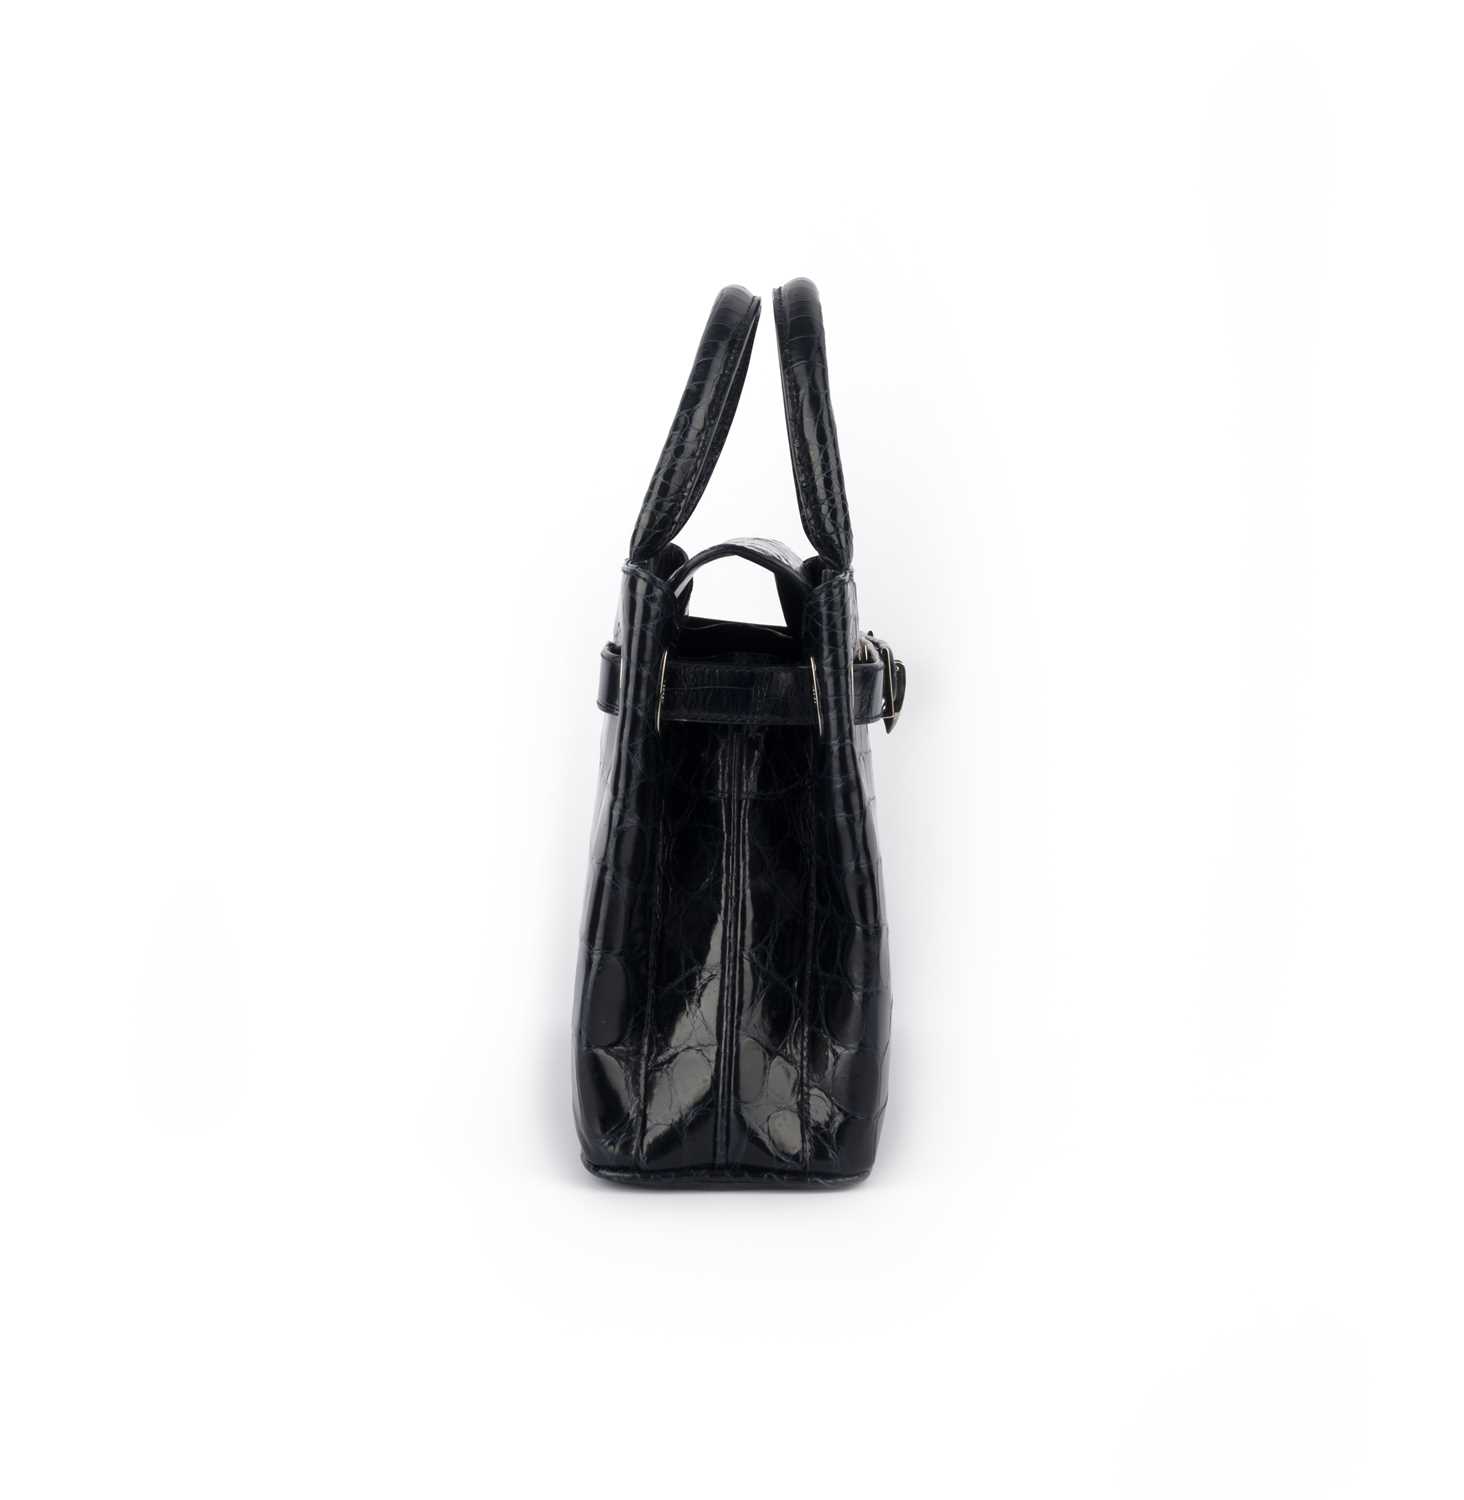 λ Asprey, a navy crocodile handbag 28.5cm wide, 20cm high, 10cm handle drop, includes coin purse, - Image 2 of 4